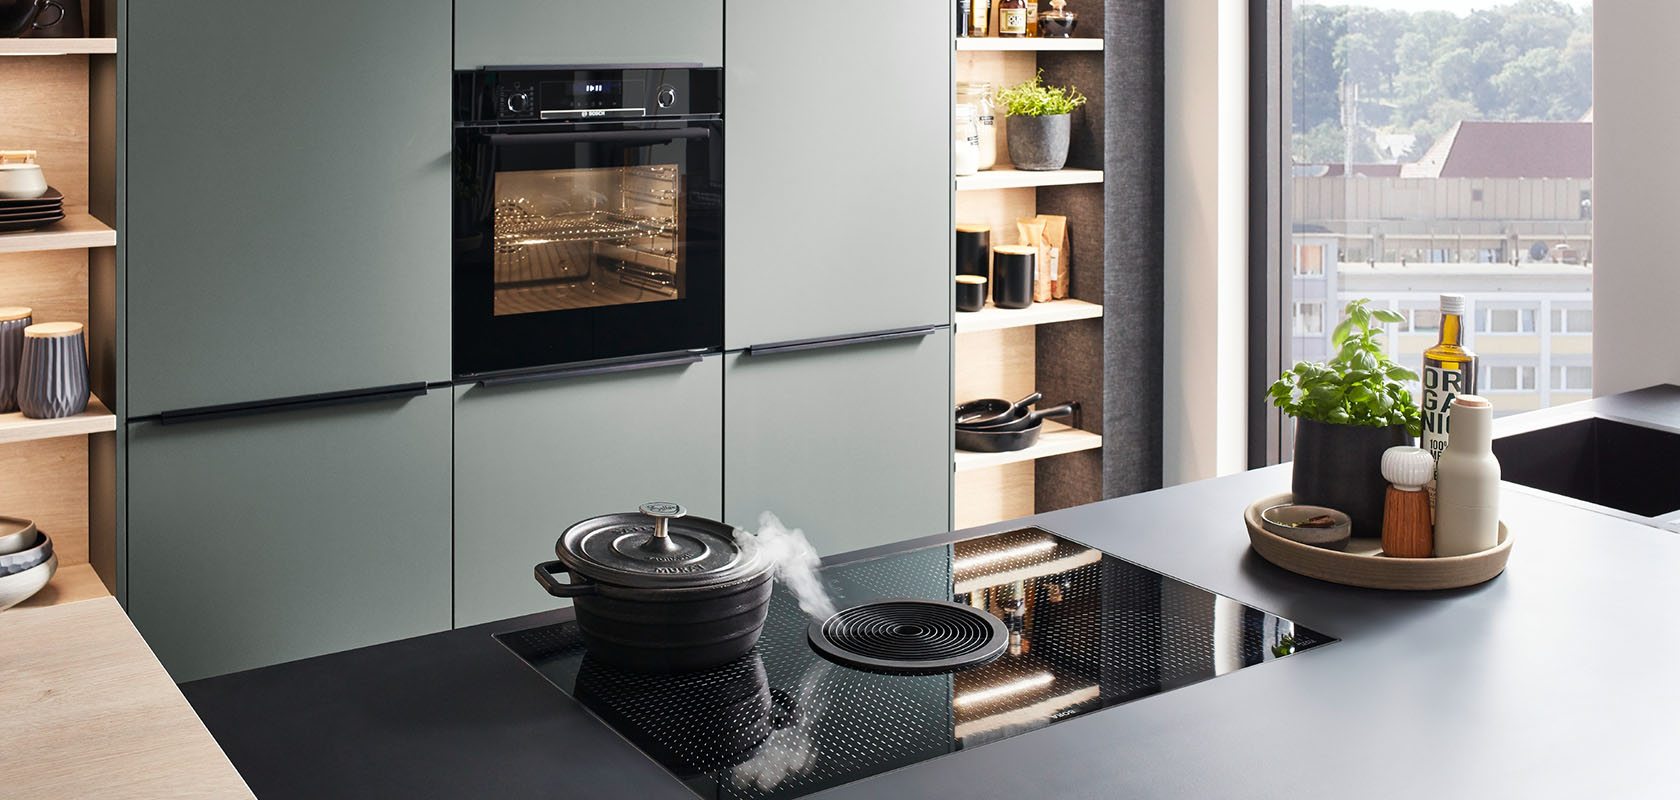 Nowoczesne wnętrze kuchni z eleganckimi zielonymi szafkami, zintegrowanymi urządzeniami AGD i płytą indukcyjną na ciemnym blacie, emanujące współczesnym stylem i funkcjonalnością.